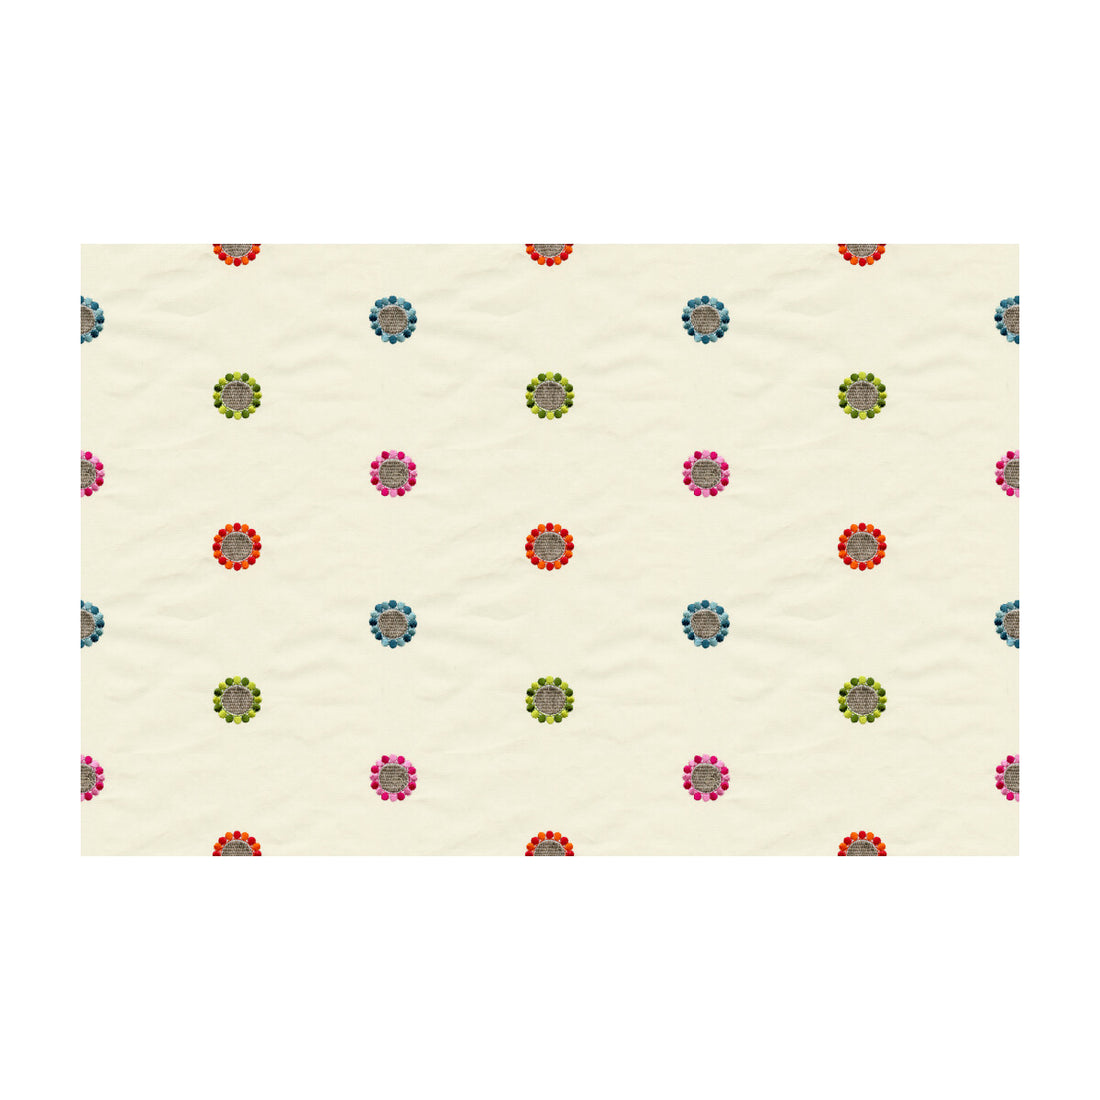 Kravet Basics fabric in 33271-511 color - pattern 33271.511.0 - by Kravet Basics in the Kravet Colors collection